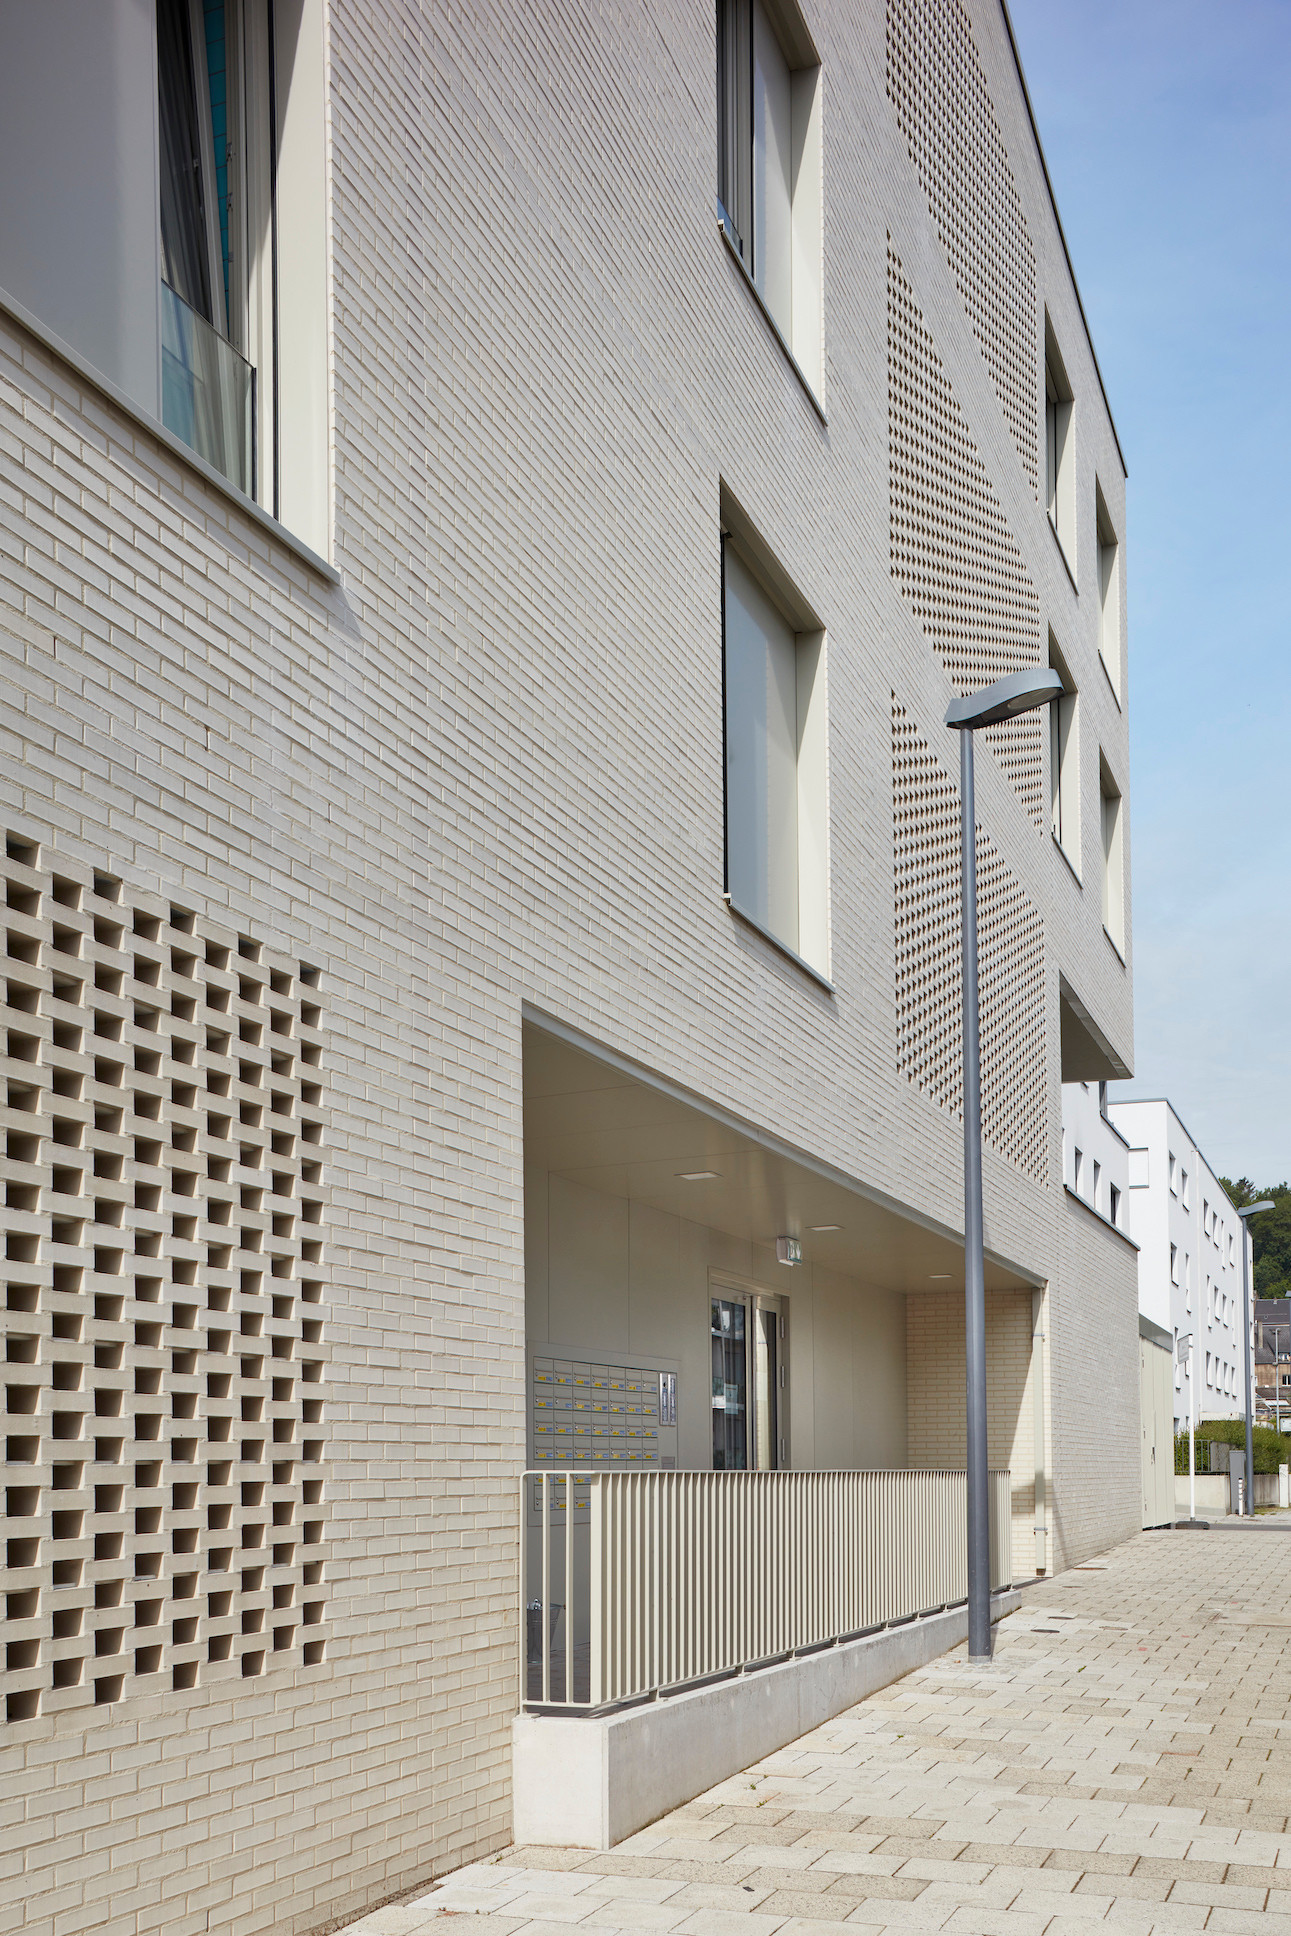 La résidence présente une façade en briques qui permet une aération naturelle des parties communes. (Photo: Palladium Photodesign)